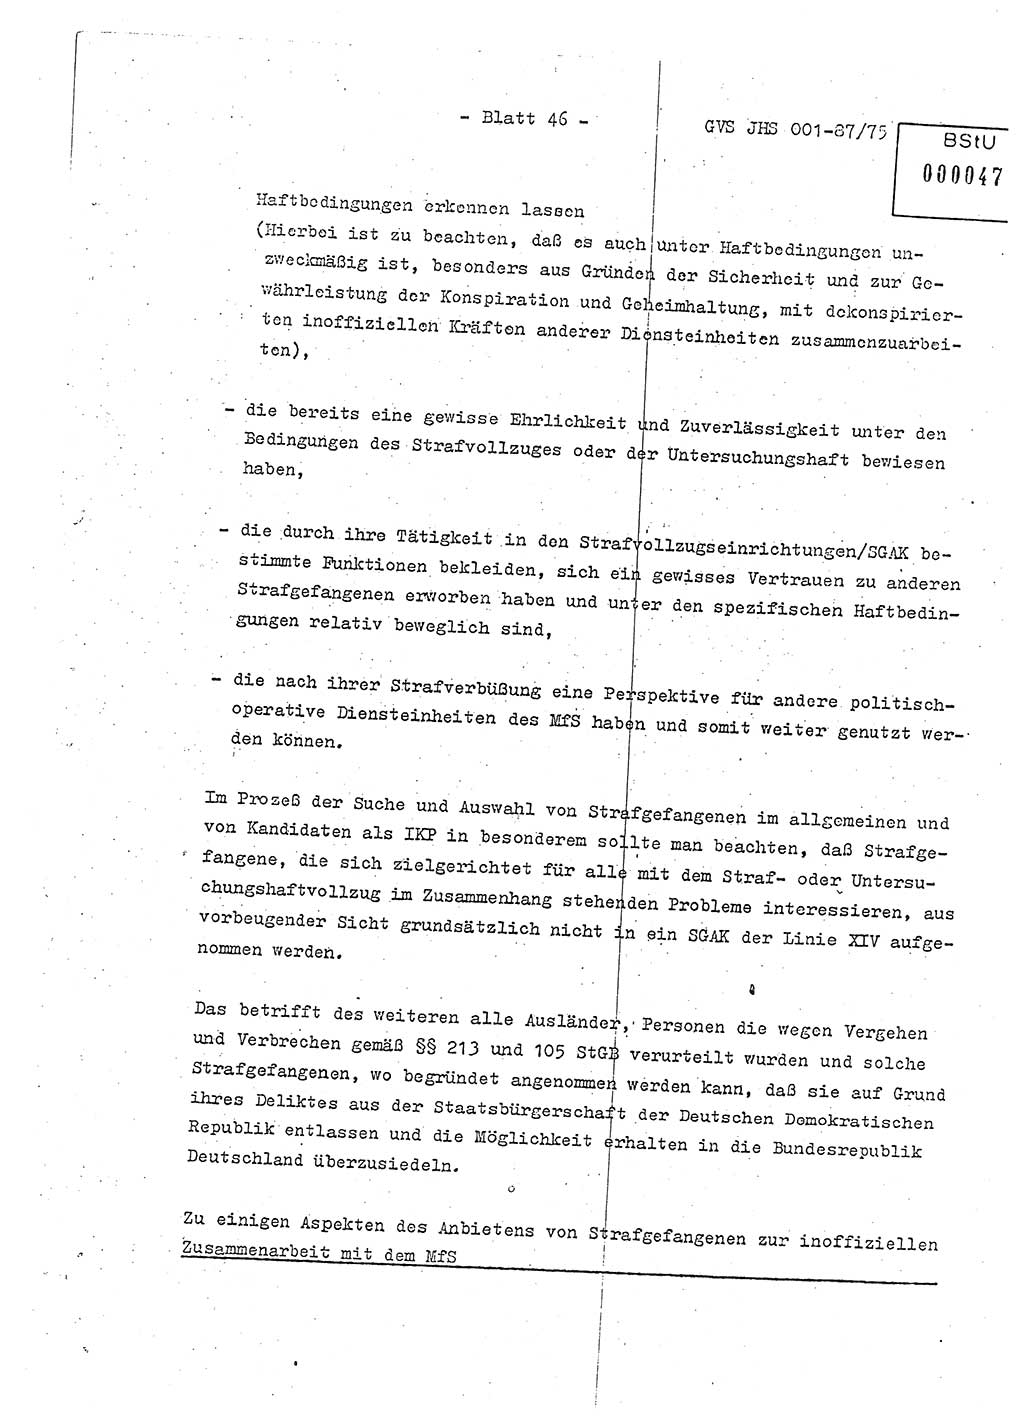 Diplomarbeit Hauptmann Volkmar Heinz (Abt. ⅩⅣ), Oberleutnant Lothar Rüdiger (BV Lpz. Abt. Ⅺ), Ministerium für Staatssicherheit (MfS) [Deutsche Demokratische Republik (DDR)], Juristische Hochschule (JHS), Geheime Verschlußsache (GVS) o001-87/75, Potsdam 1975, Seite 46 (Dipl.-Arb. MfS DDR JHS GVS o001-87/75 1975, S. 46)